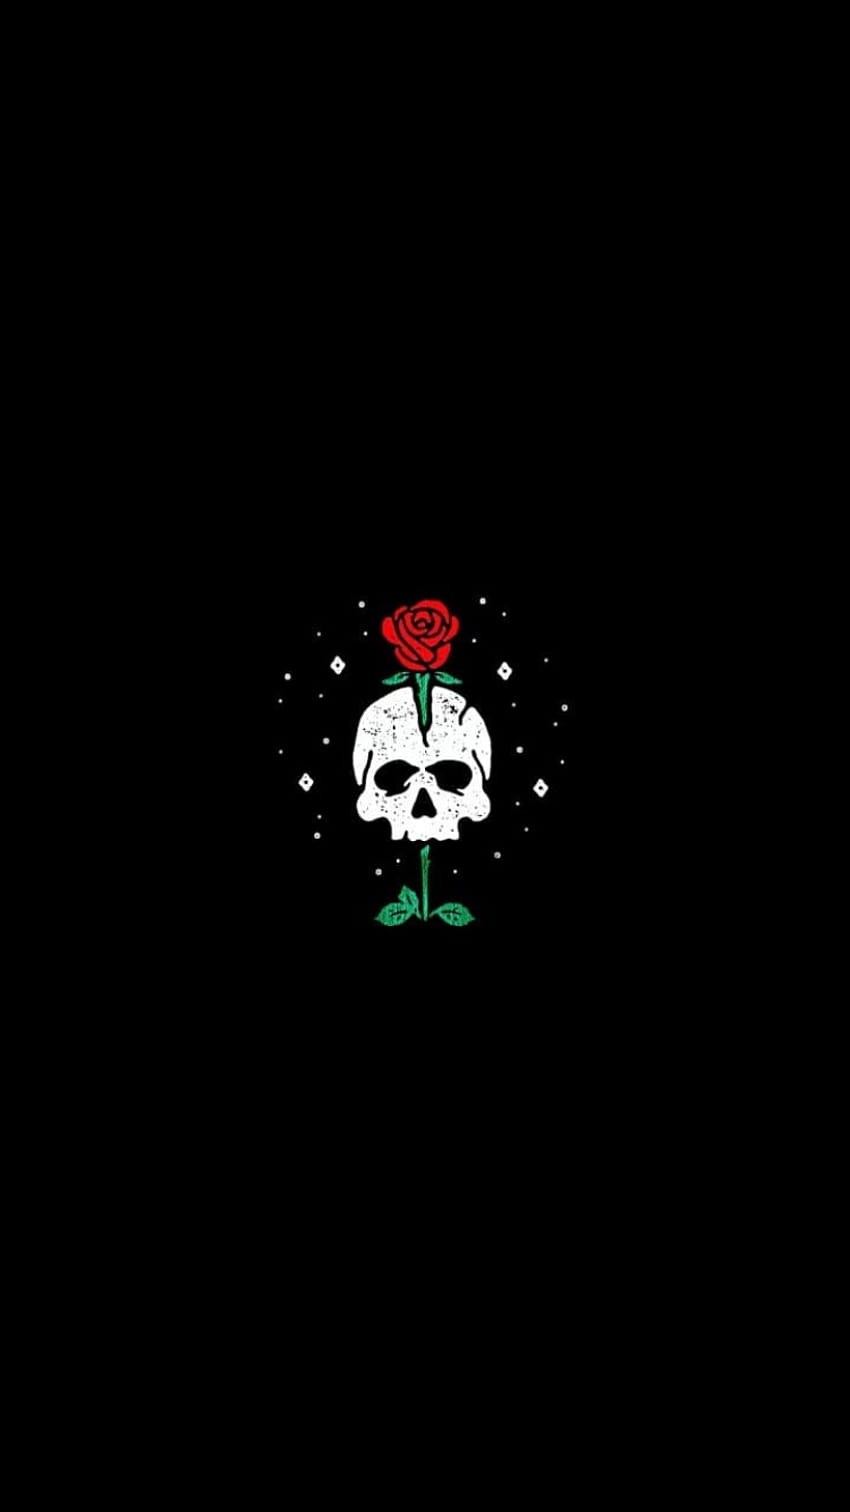 ボード「Walpaper, skull and roses」のピン HD電話の壁紙